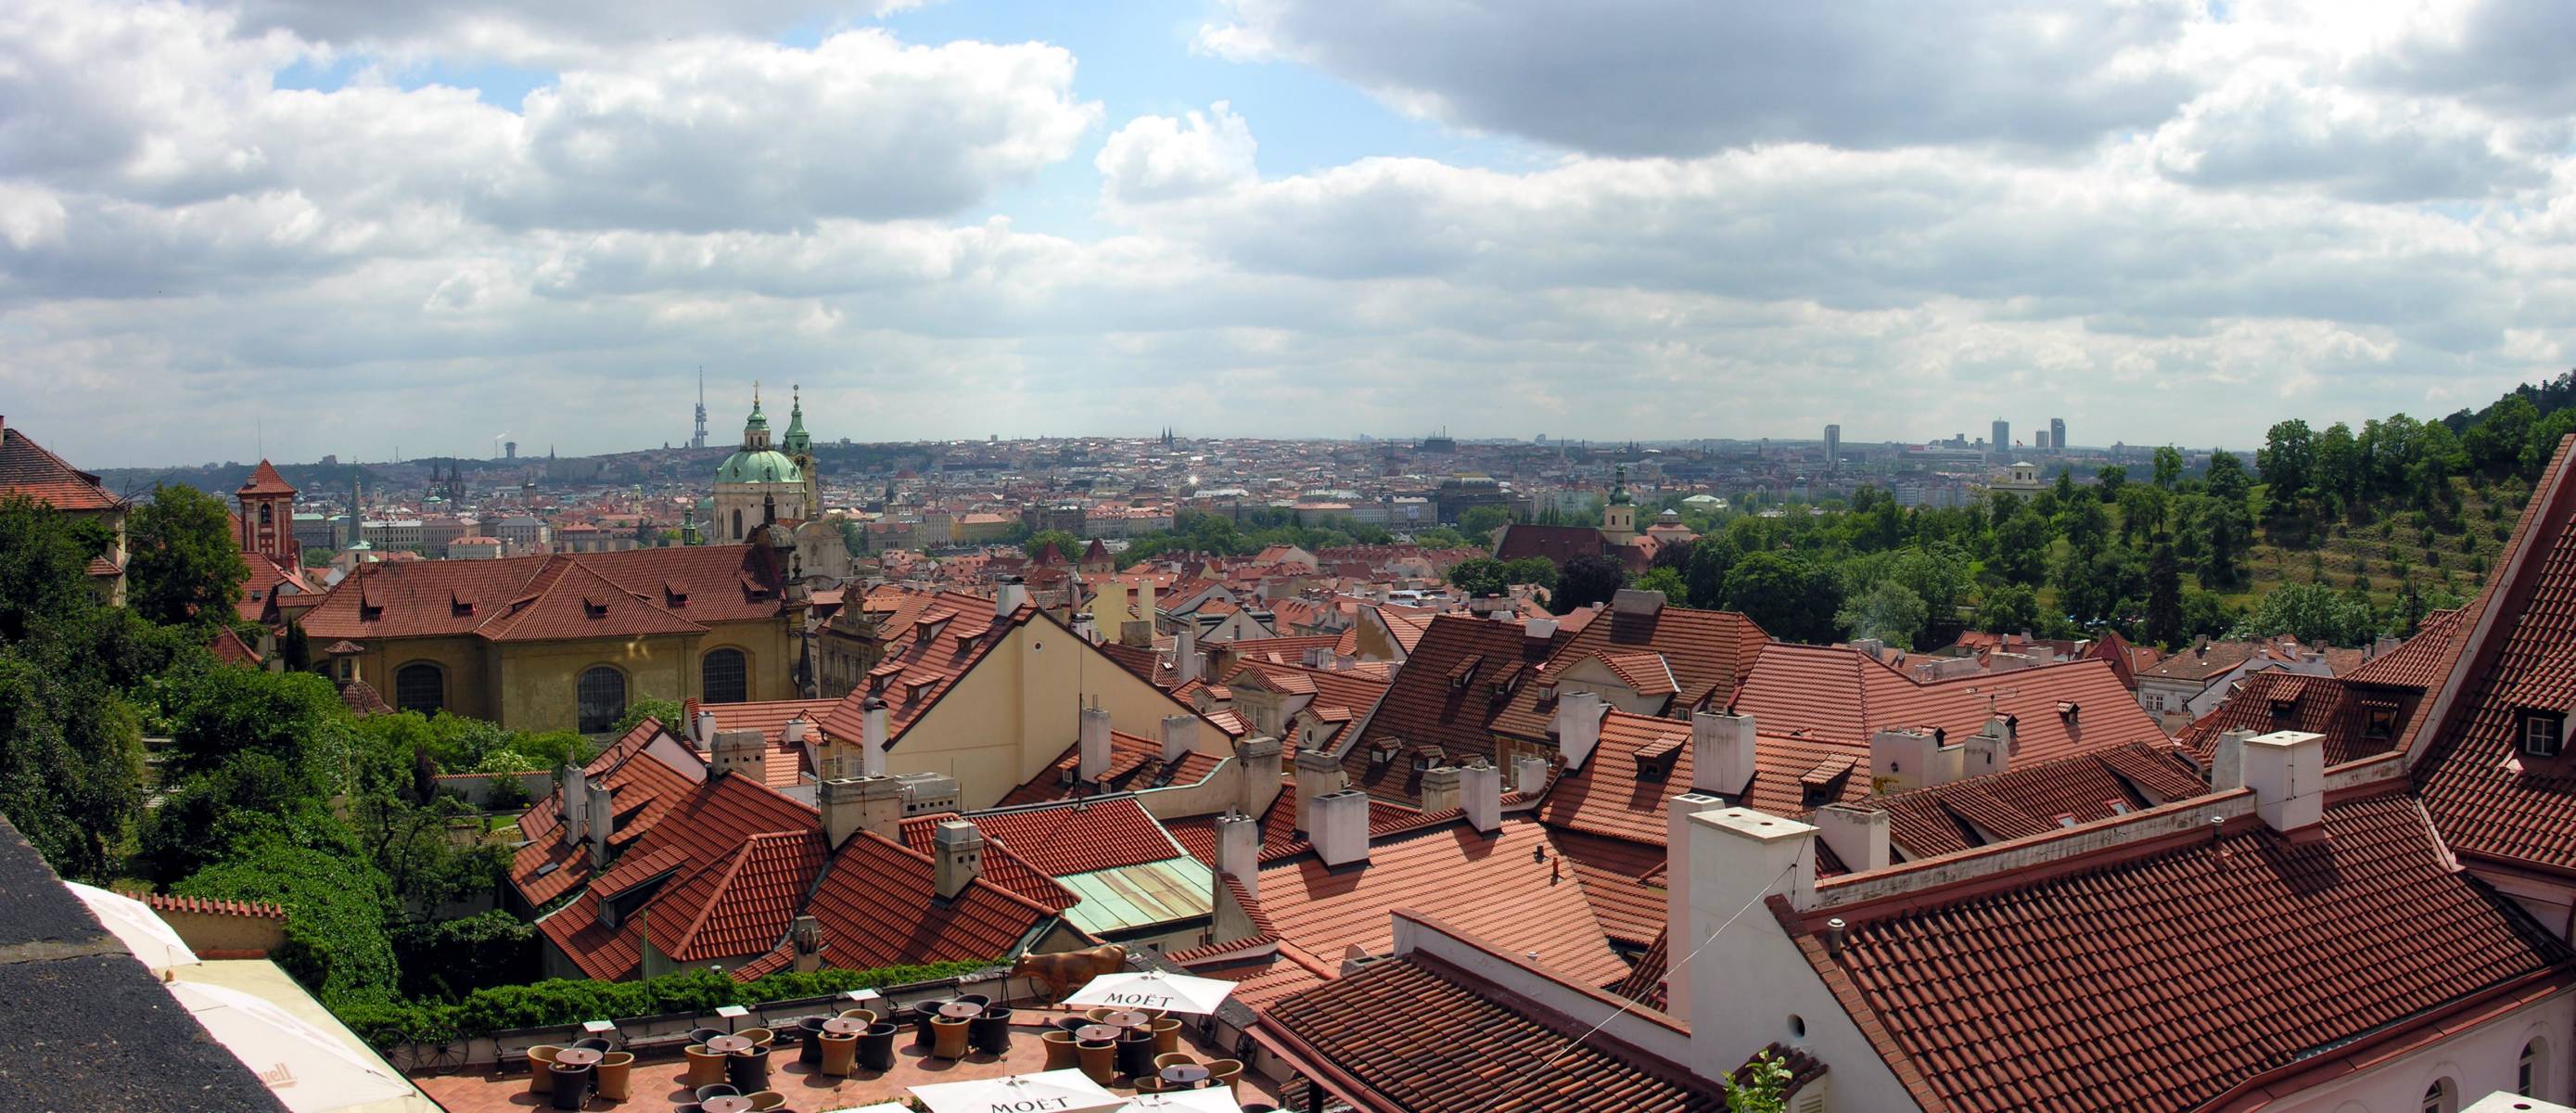 Roofs - Prague - Czech Republic.jpg